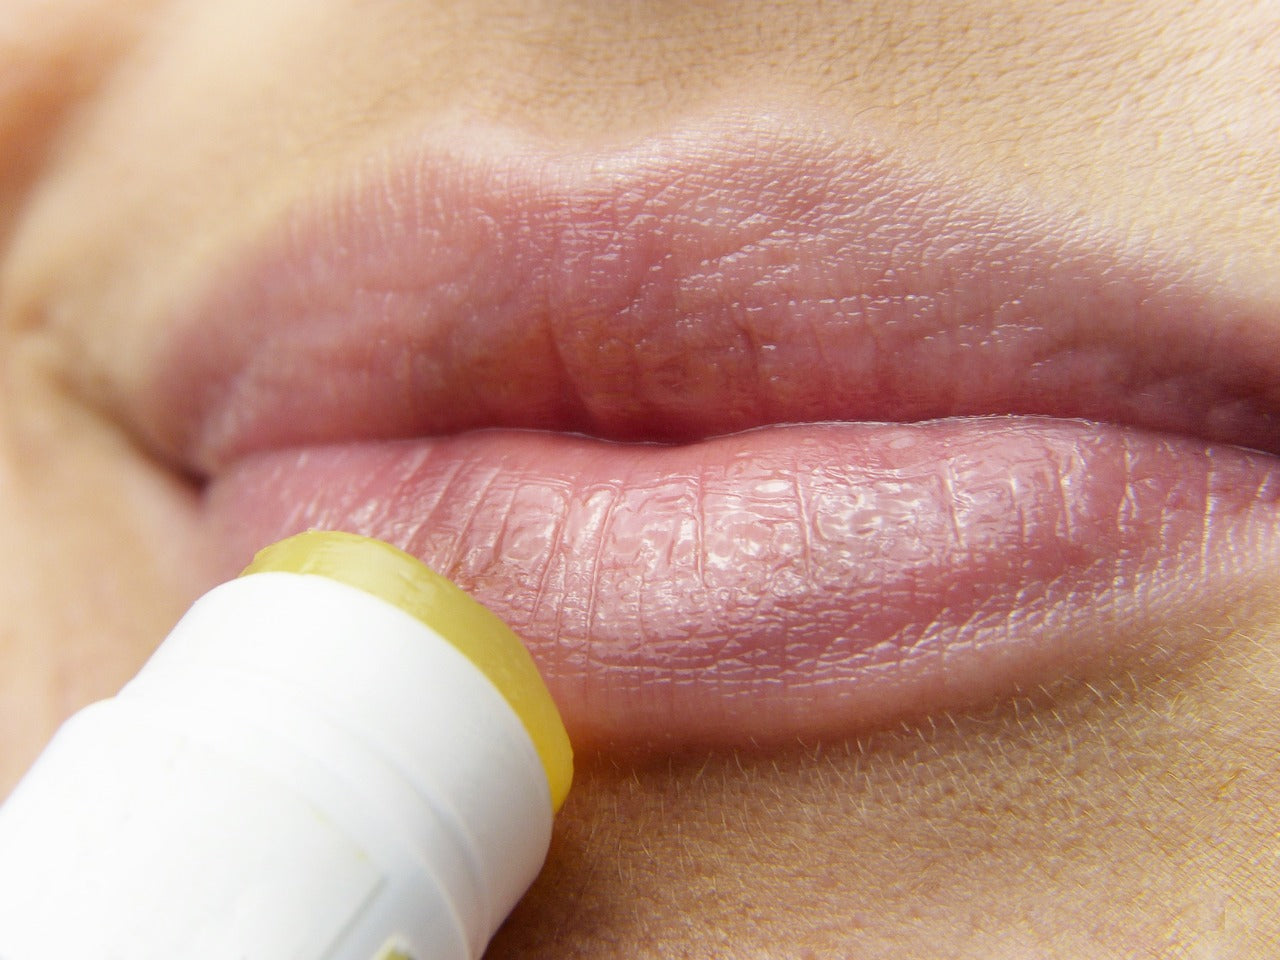 Where to apply lip balm?